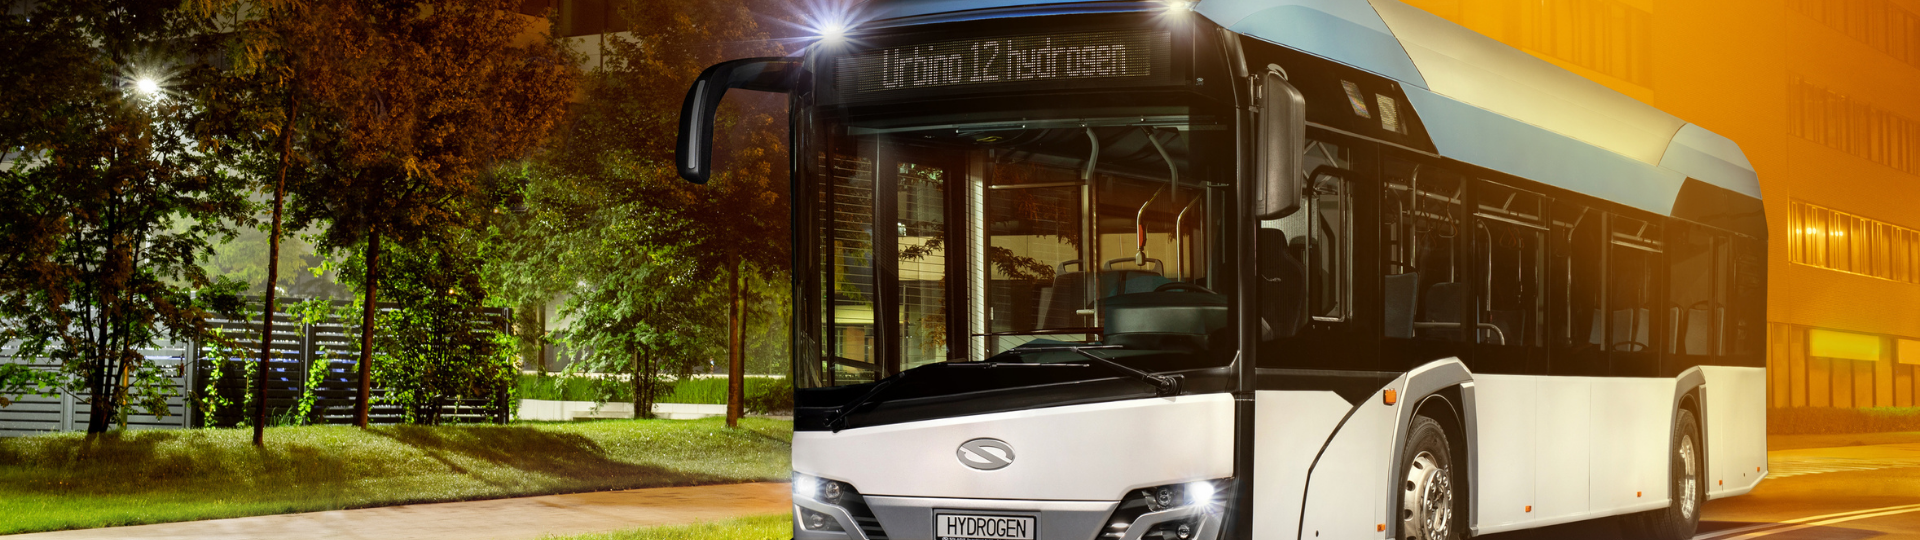 Solaris hydrogen bus tested in Paris